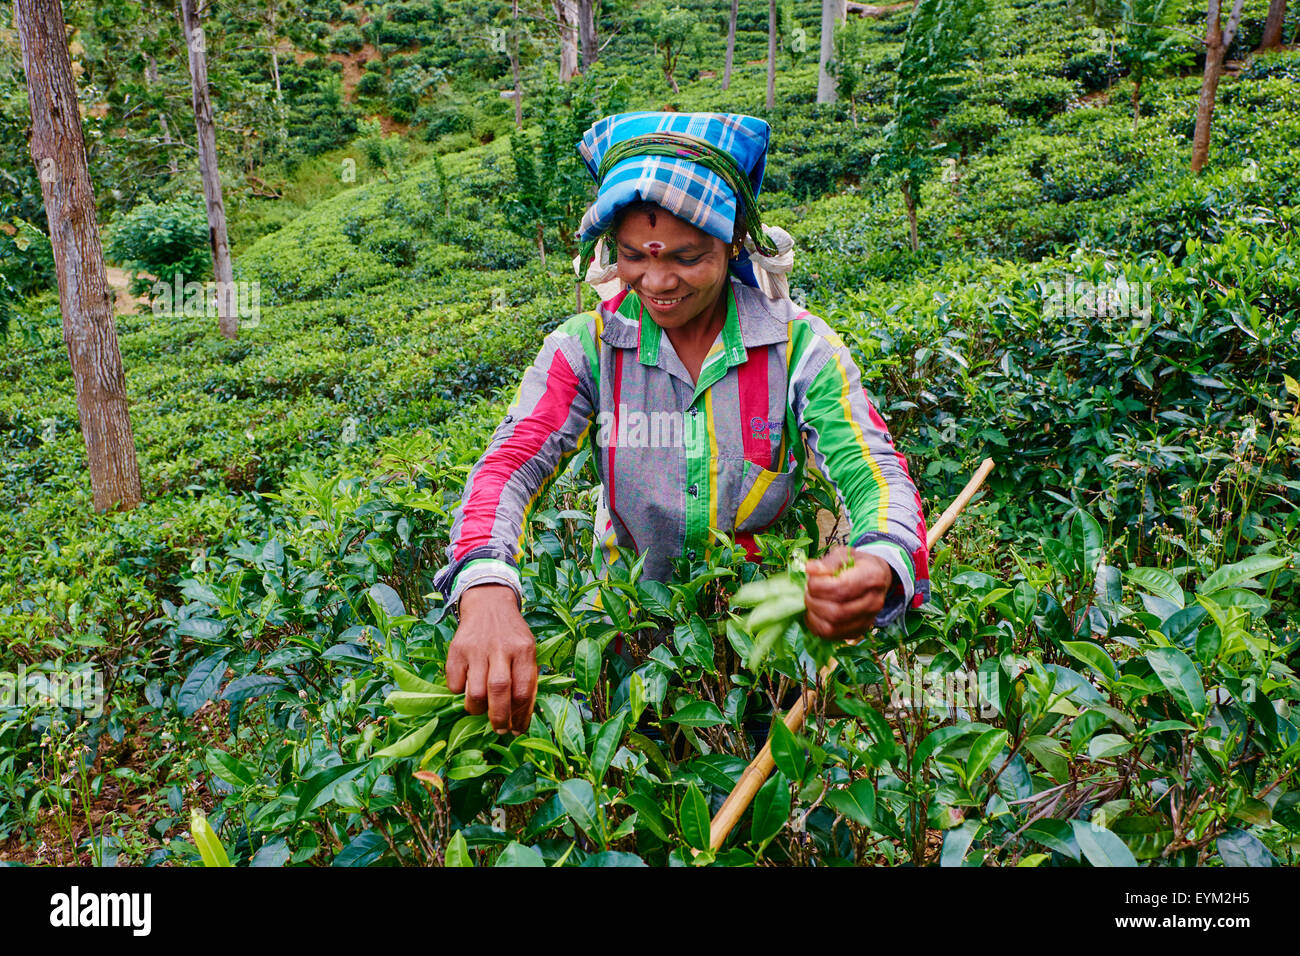 Sri Lanka, Ceylon, Central Province, Haputale, Teeplantagen im Hochland, tamilischen Frauen Tee Kommissionierer Kommissionierung Teeblätter Stockfoto